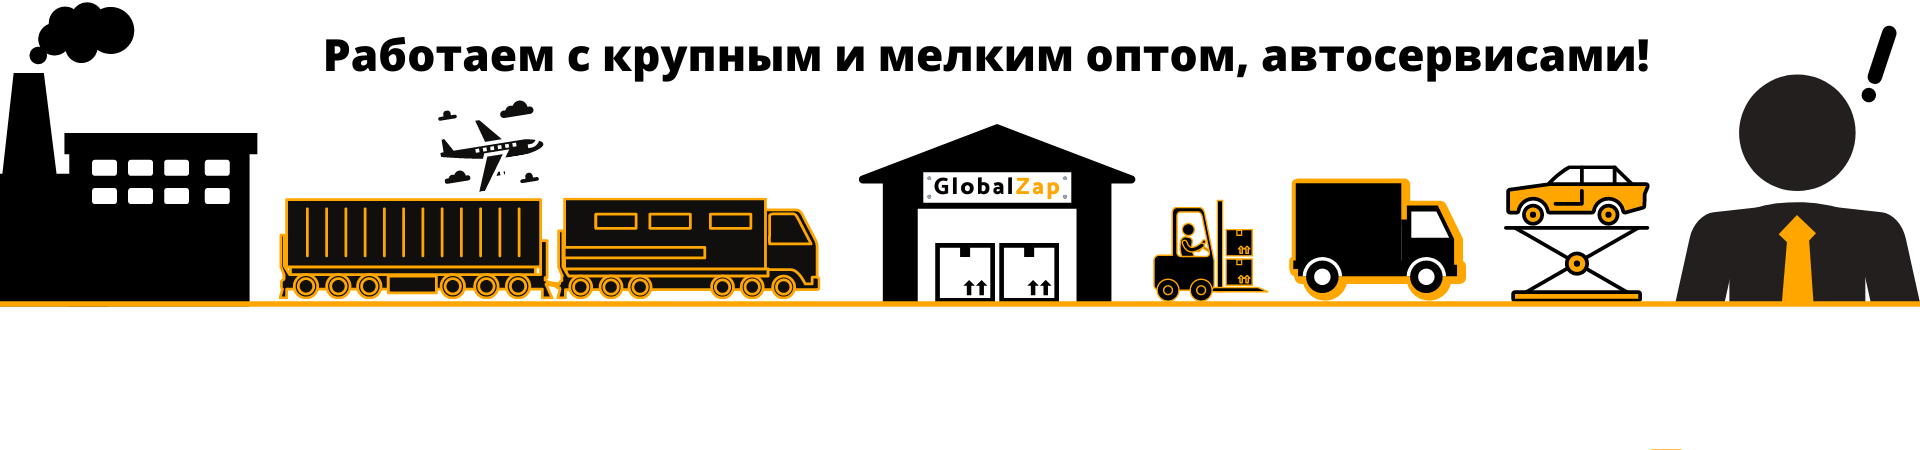 Глобалзап представляет полный комплекс услуг по продаже автозапчастей оптом: продажа, доставка по москве и собственный склад. Работаем с крупным и мелким оптом, автосервисами!